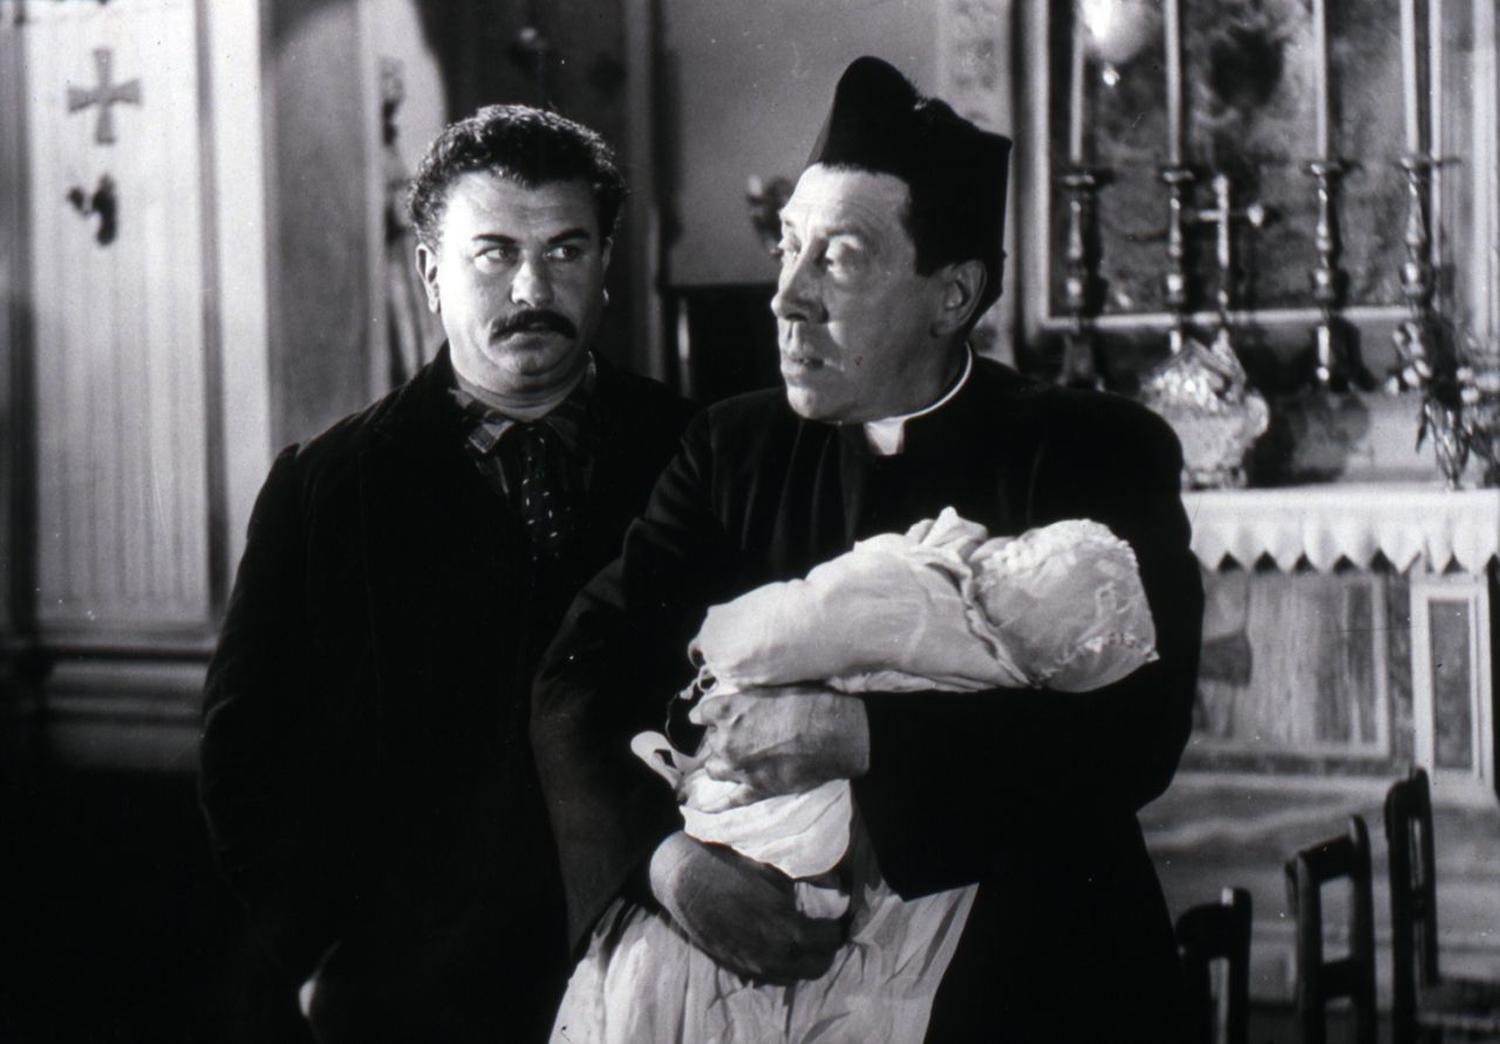 Don Camillo & Peppone Edition (blu-ray)